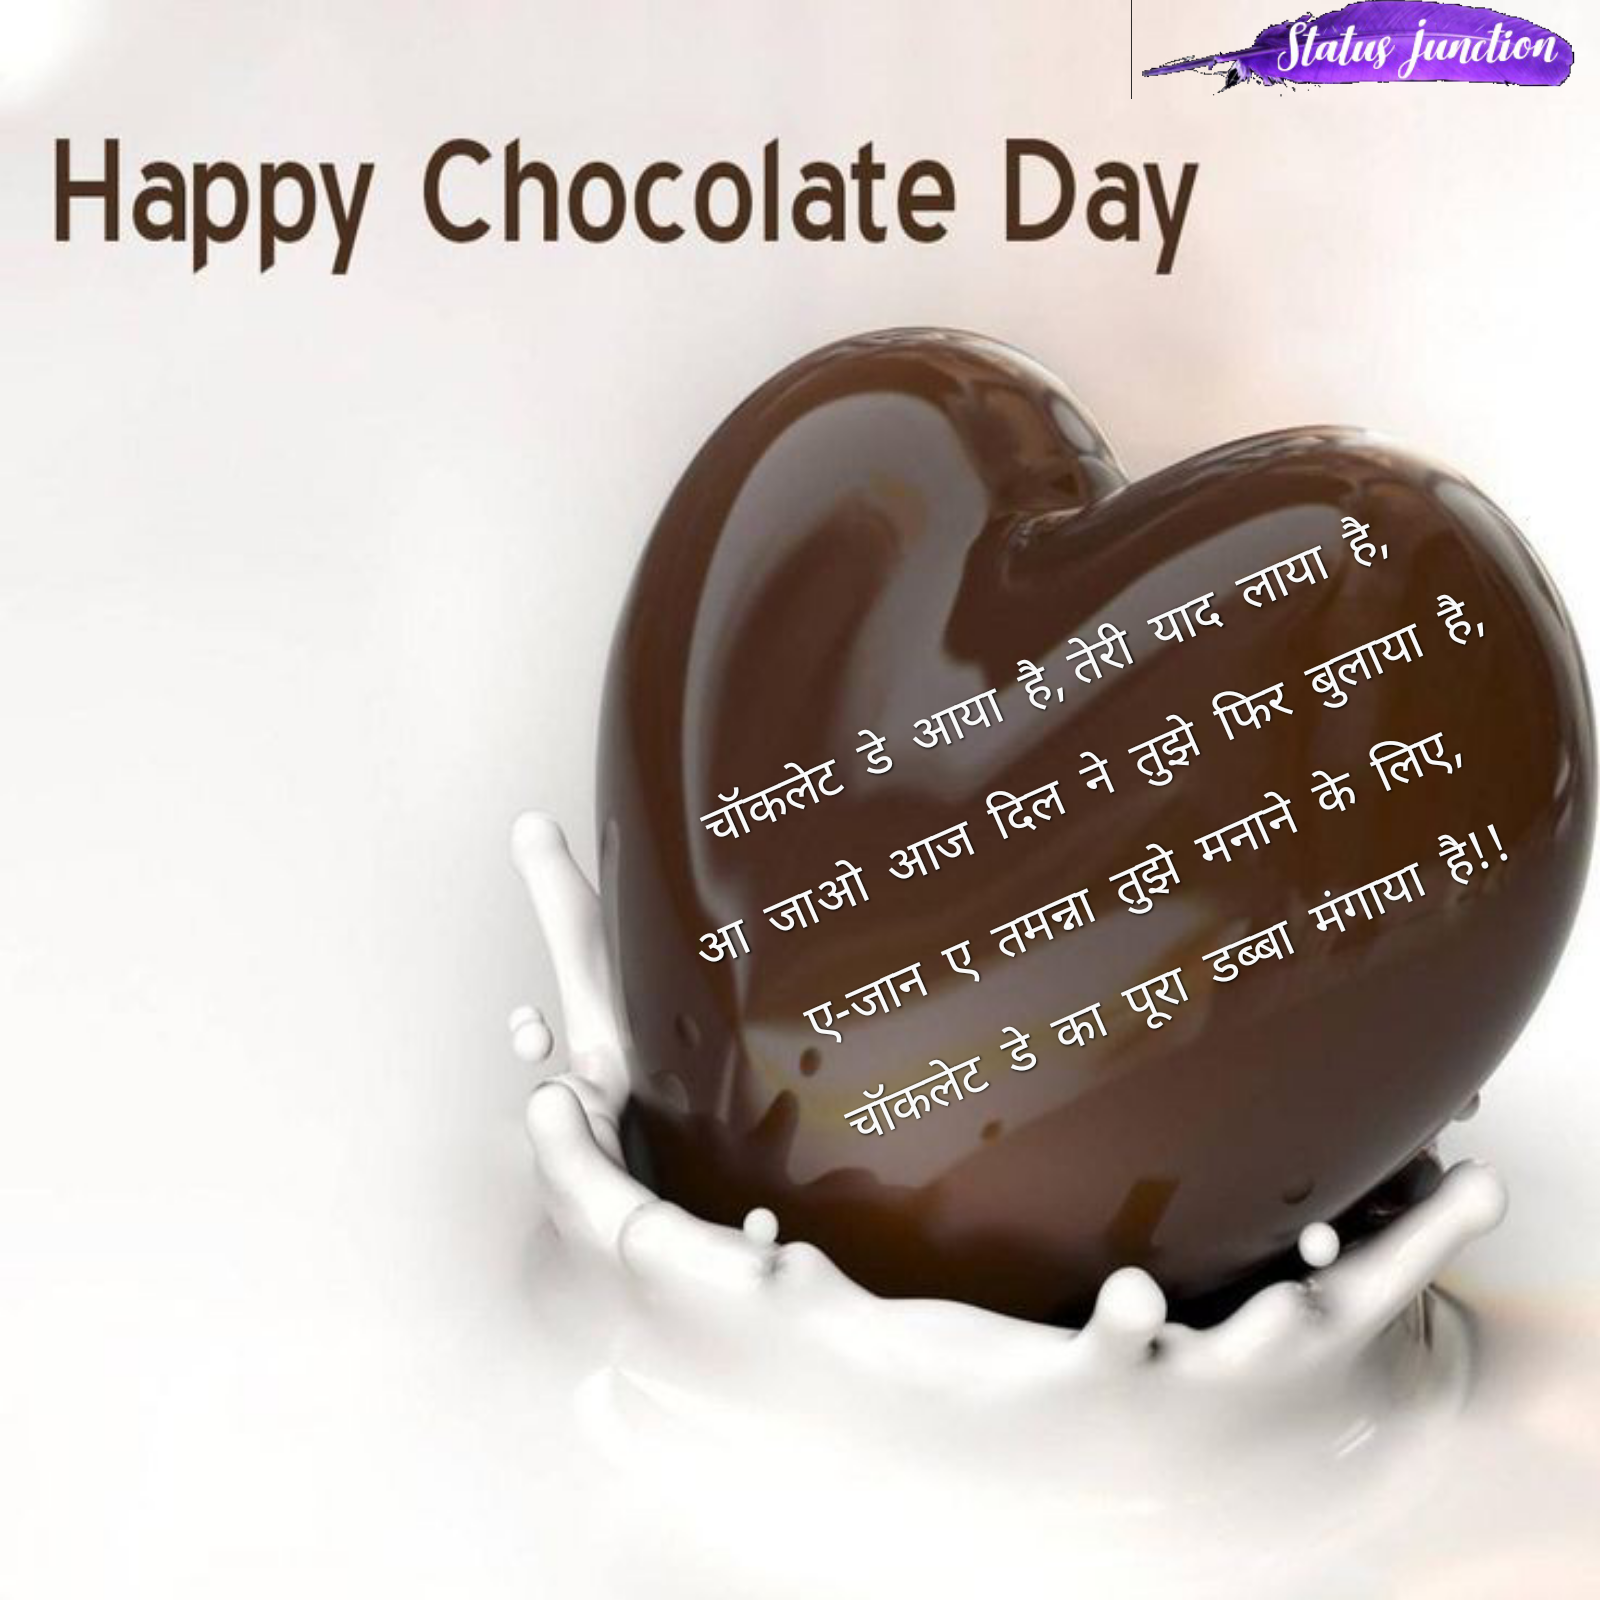 aaj hai chocolate day chocolate to khilao.....meethi meethi koi bat to sunao.....kb se tadaf rhe hai hum aapke pyar me....aaj to hume apne gale se lgaao. आज है चॉकलेट डे चॉकलेट तो खिलाओ....मीठी-मीठी कोई बात तो सुनाओ....कब से तड़फ रहे हैं हम आपके प्यार में...आज तो हमें अपने गले से लगाओ